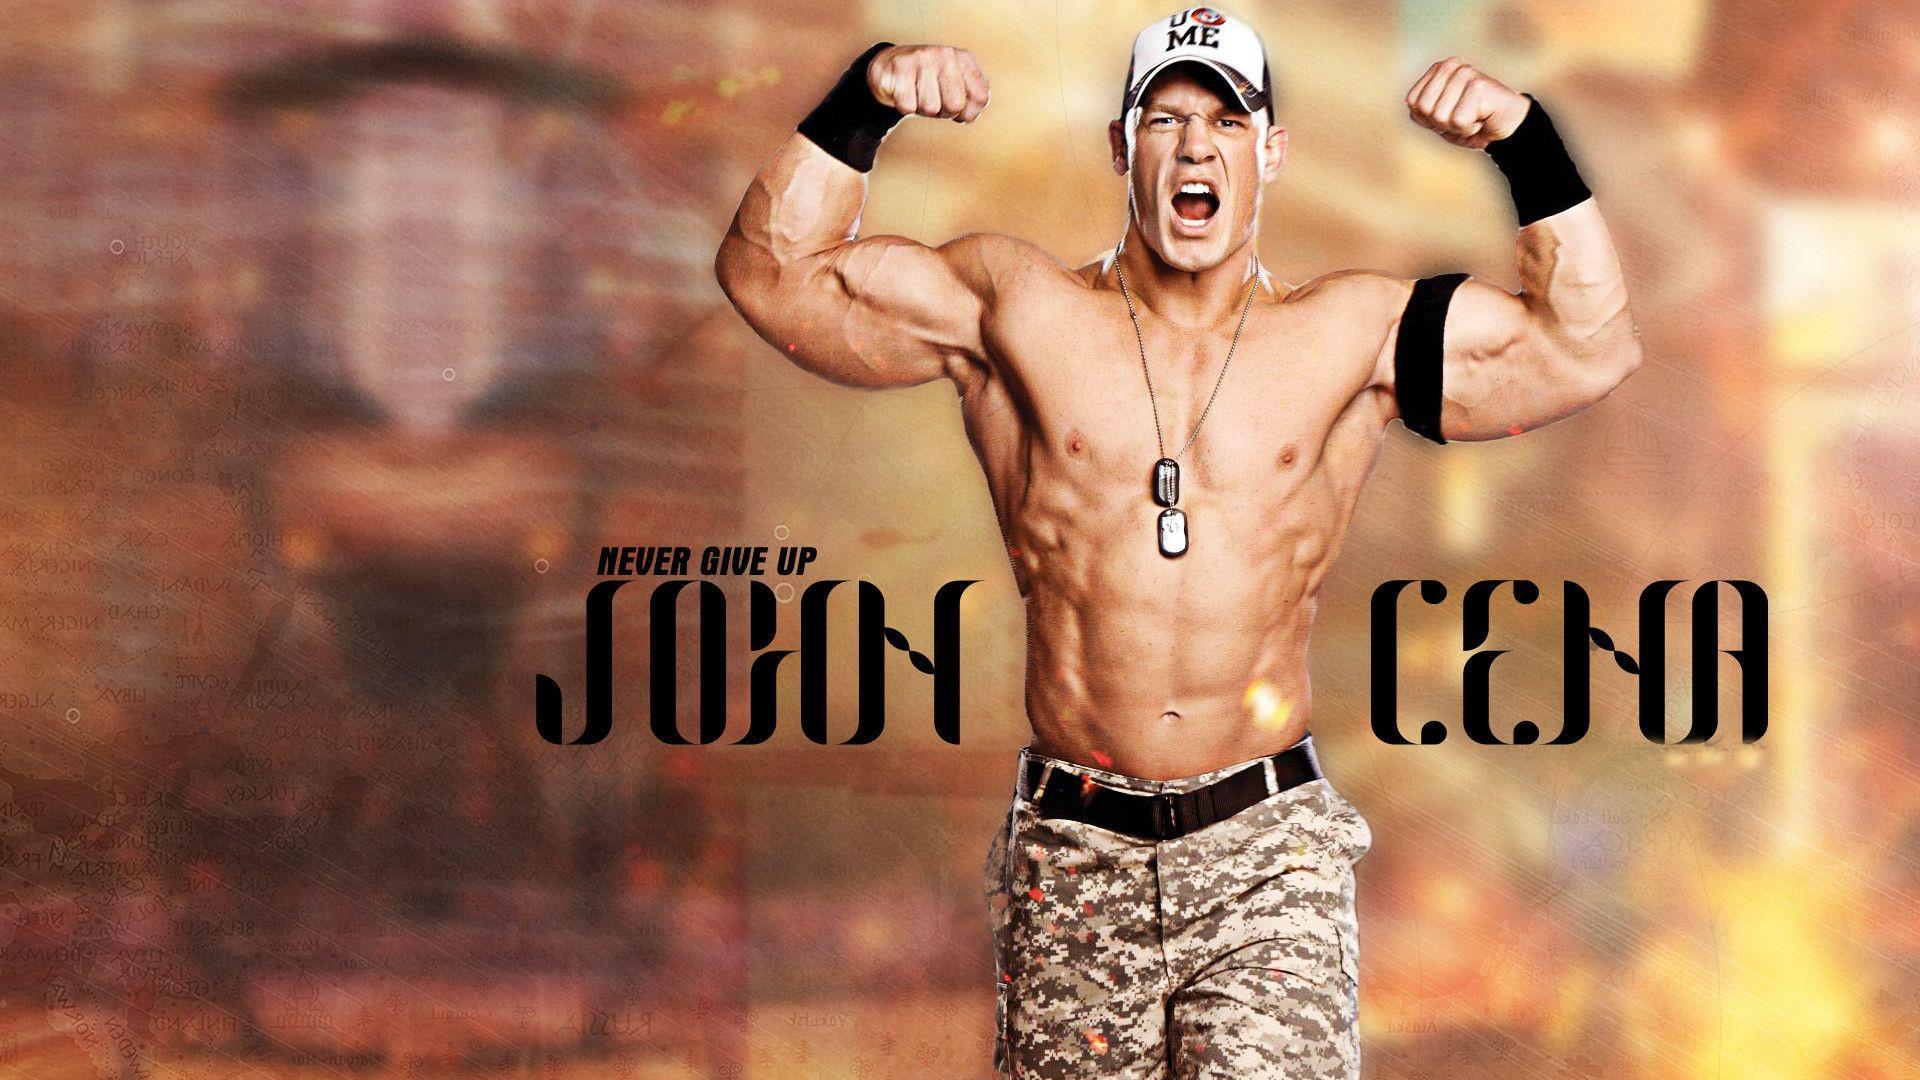 John Cena WWE 2014 Star Wallpaper Wide or HD. Male Celebrities